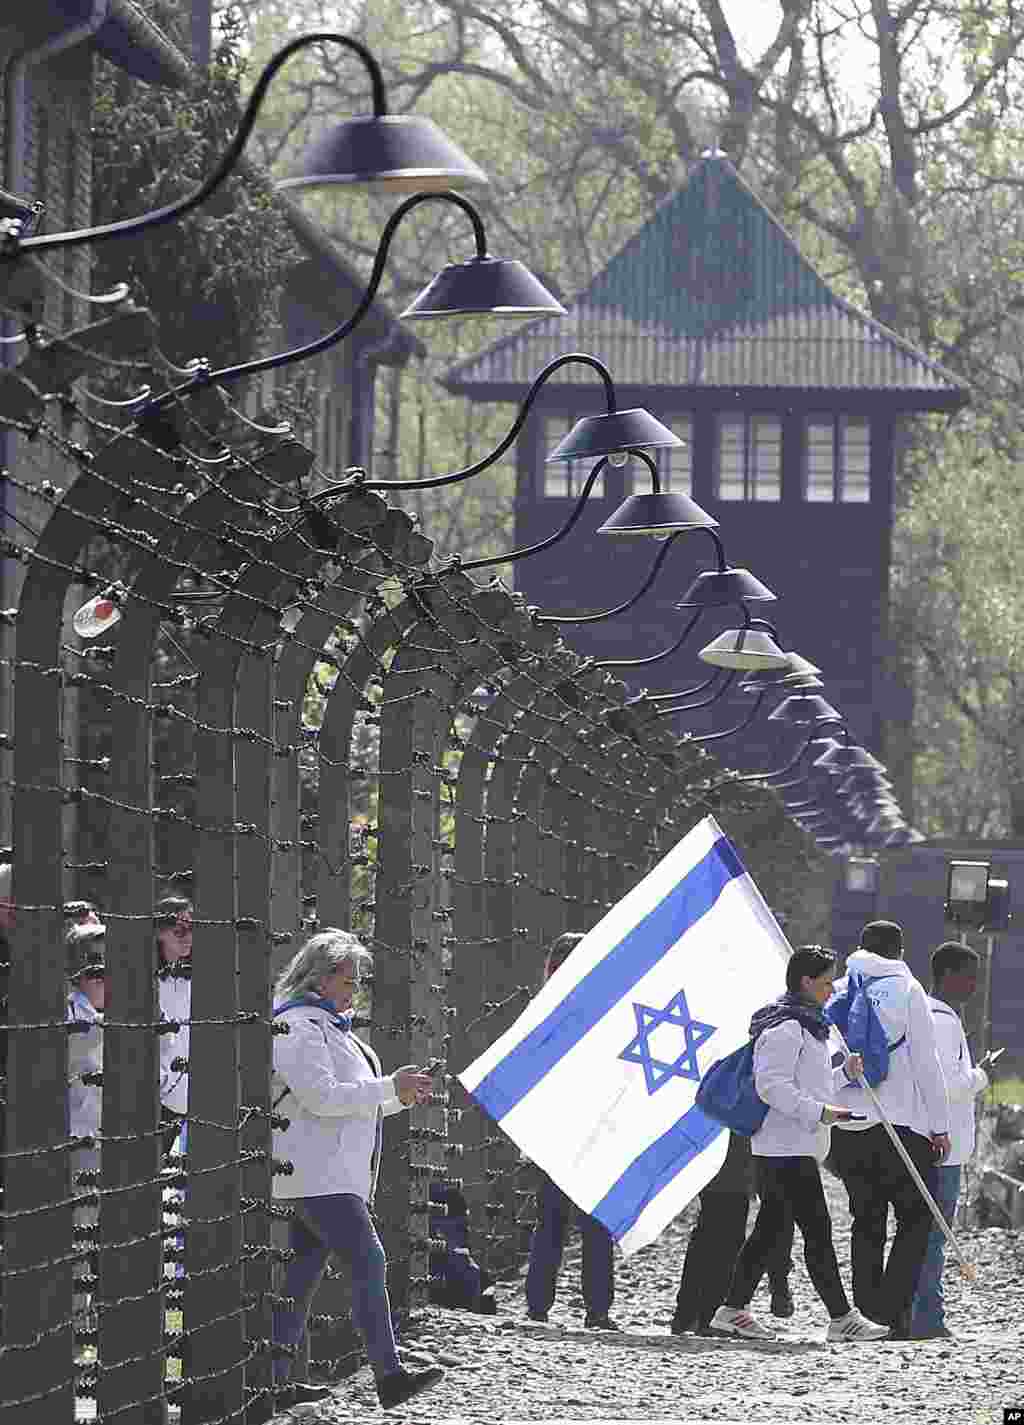 یک گروه از بازدید کنندگان با پرچم اسرائیل در اردوگاه &laquo;آشویتس&raquo; در دوران آلمان نازی که اکنون در لهستان قرار دارد. هولوکاست یادآور نسل کشی یهودیان است که نازی&zwnj;ها دست کم شش میلیون یهودی را کشتند.